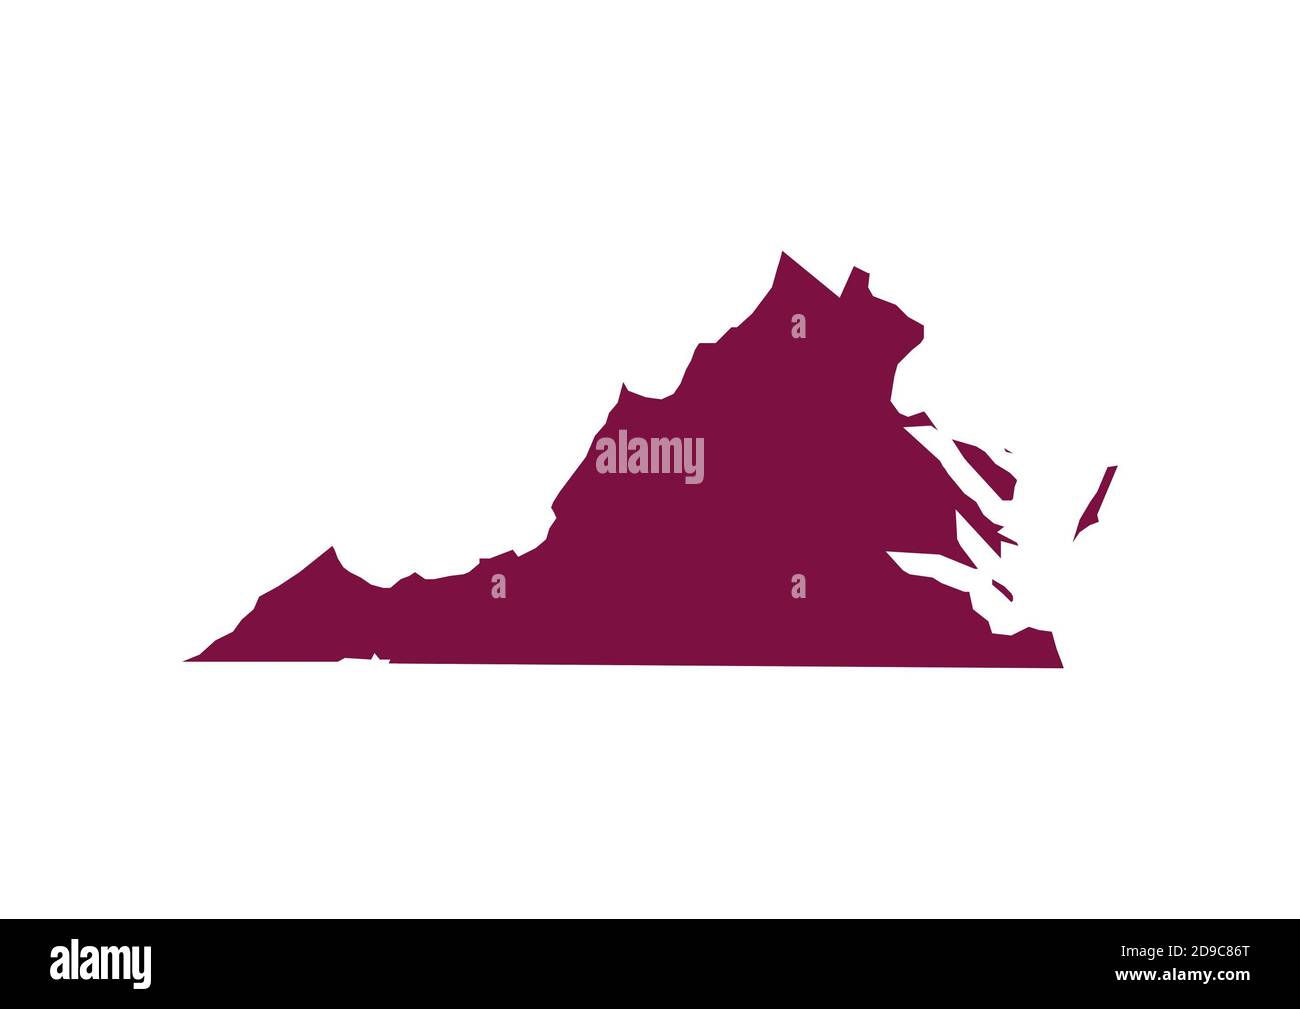 Mappa di Virginia Foto Stock